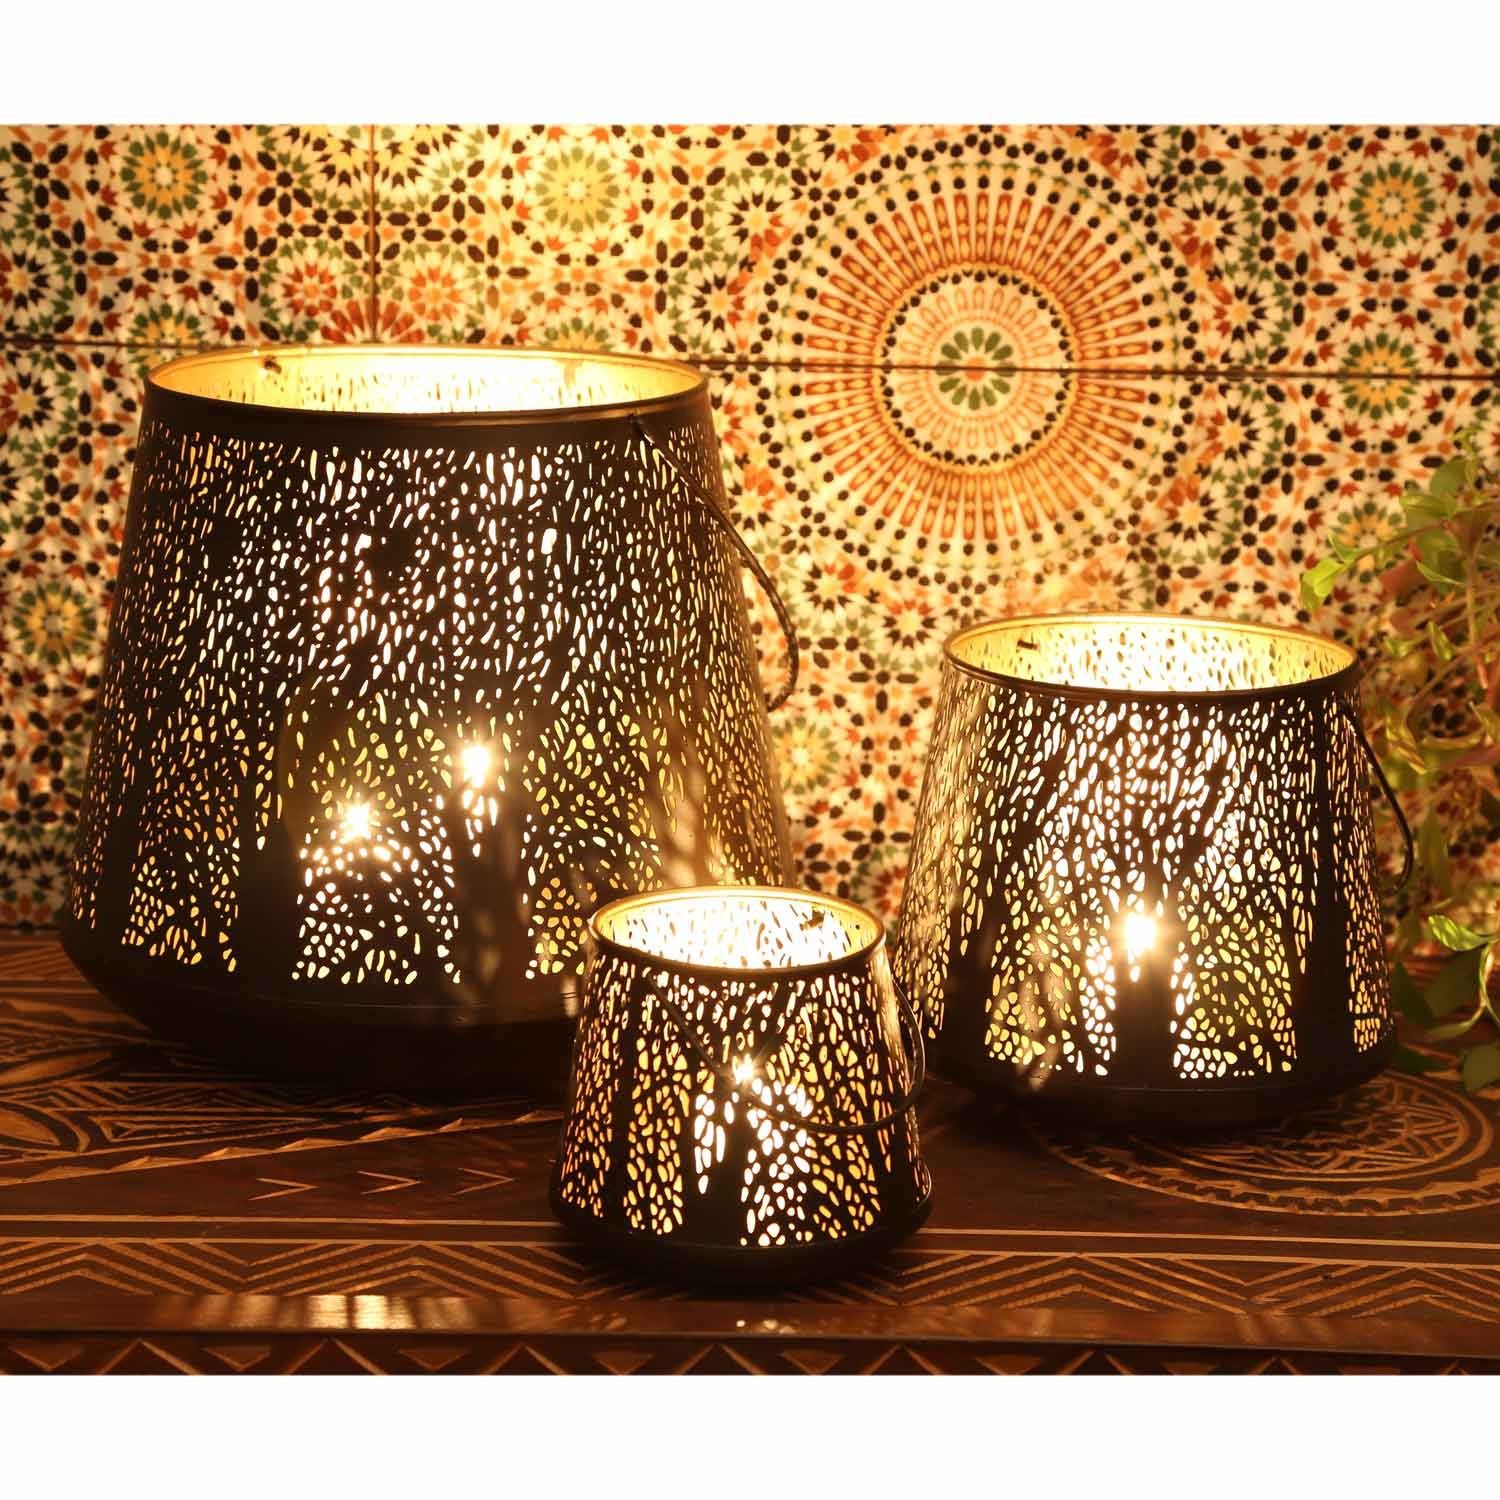 Casa Moro Windlicht Orientalisches Windlicht Como 3er Set aus Metall innen  Gold außen schwarz, 3 runde Laternen mit Henkel, Marokkanische Kerzenhalter  aus 1001 Nacht, Ramadan Wohn-Deko Weihnachten, IRL70, aus traditioneller  Handarbeit